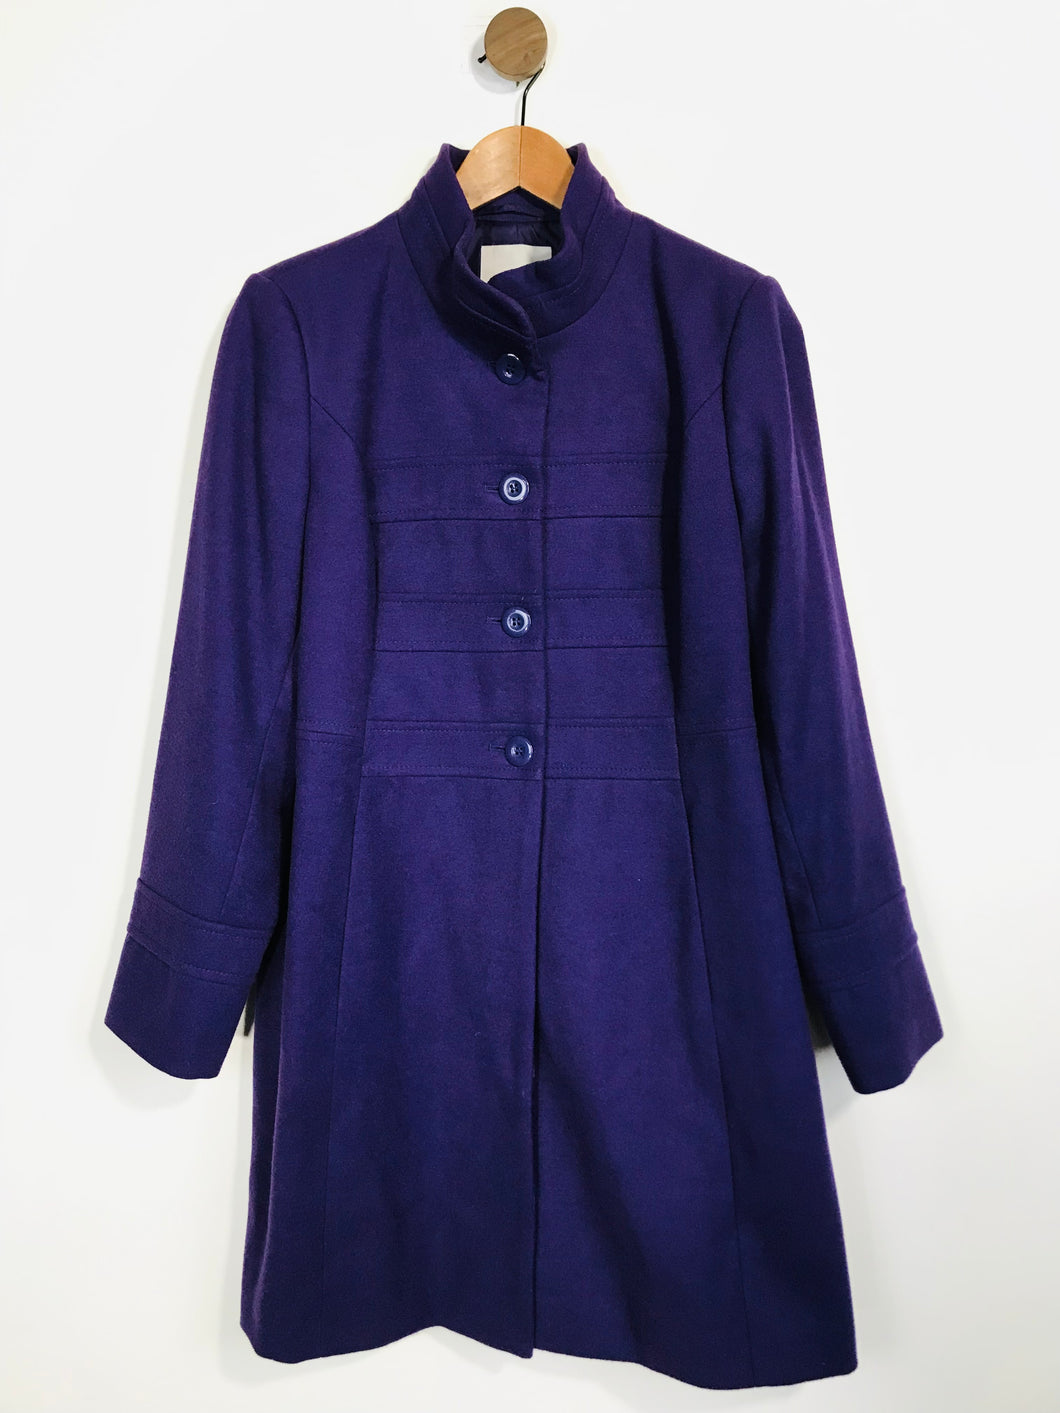 John Lewis Women's Peacoat Coat | UK16 | Purple